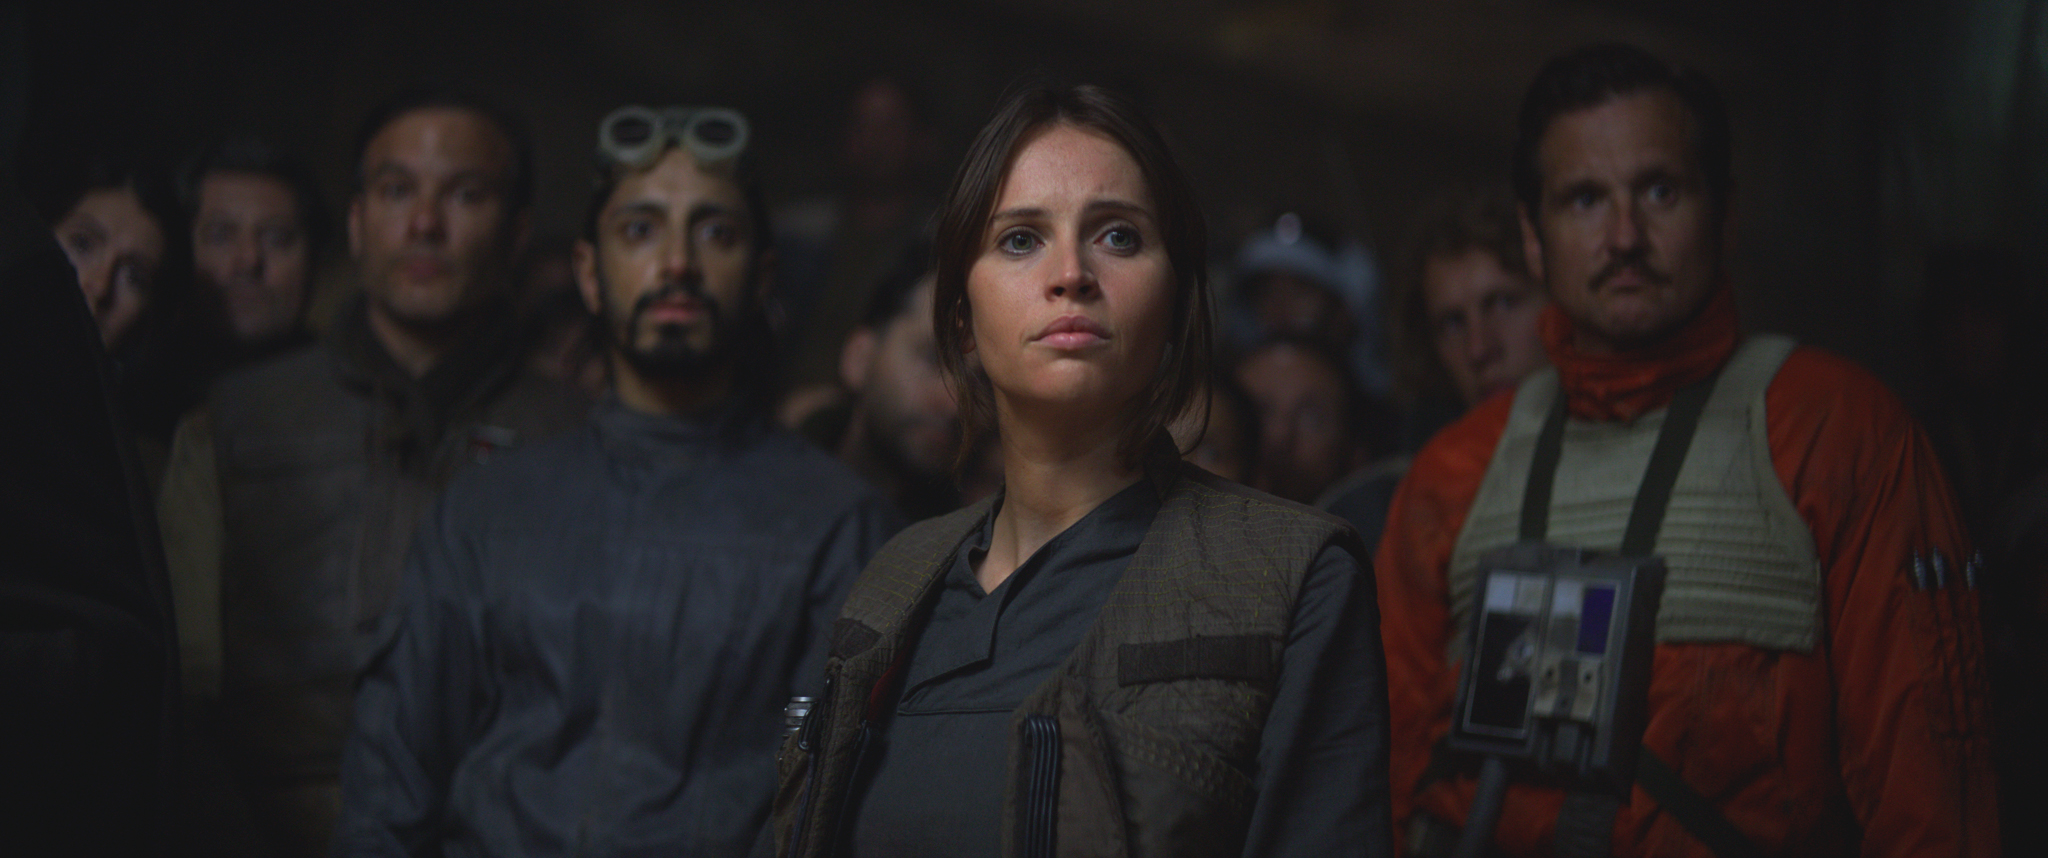 De Leia à Jyn Erso : comment Star Wars tente de libérer ses héroïnes